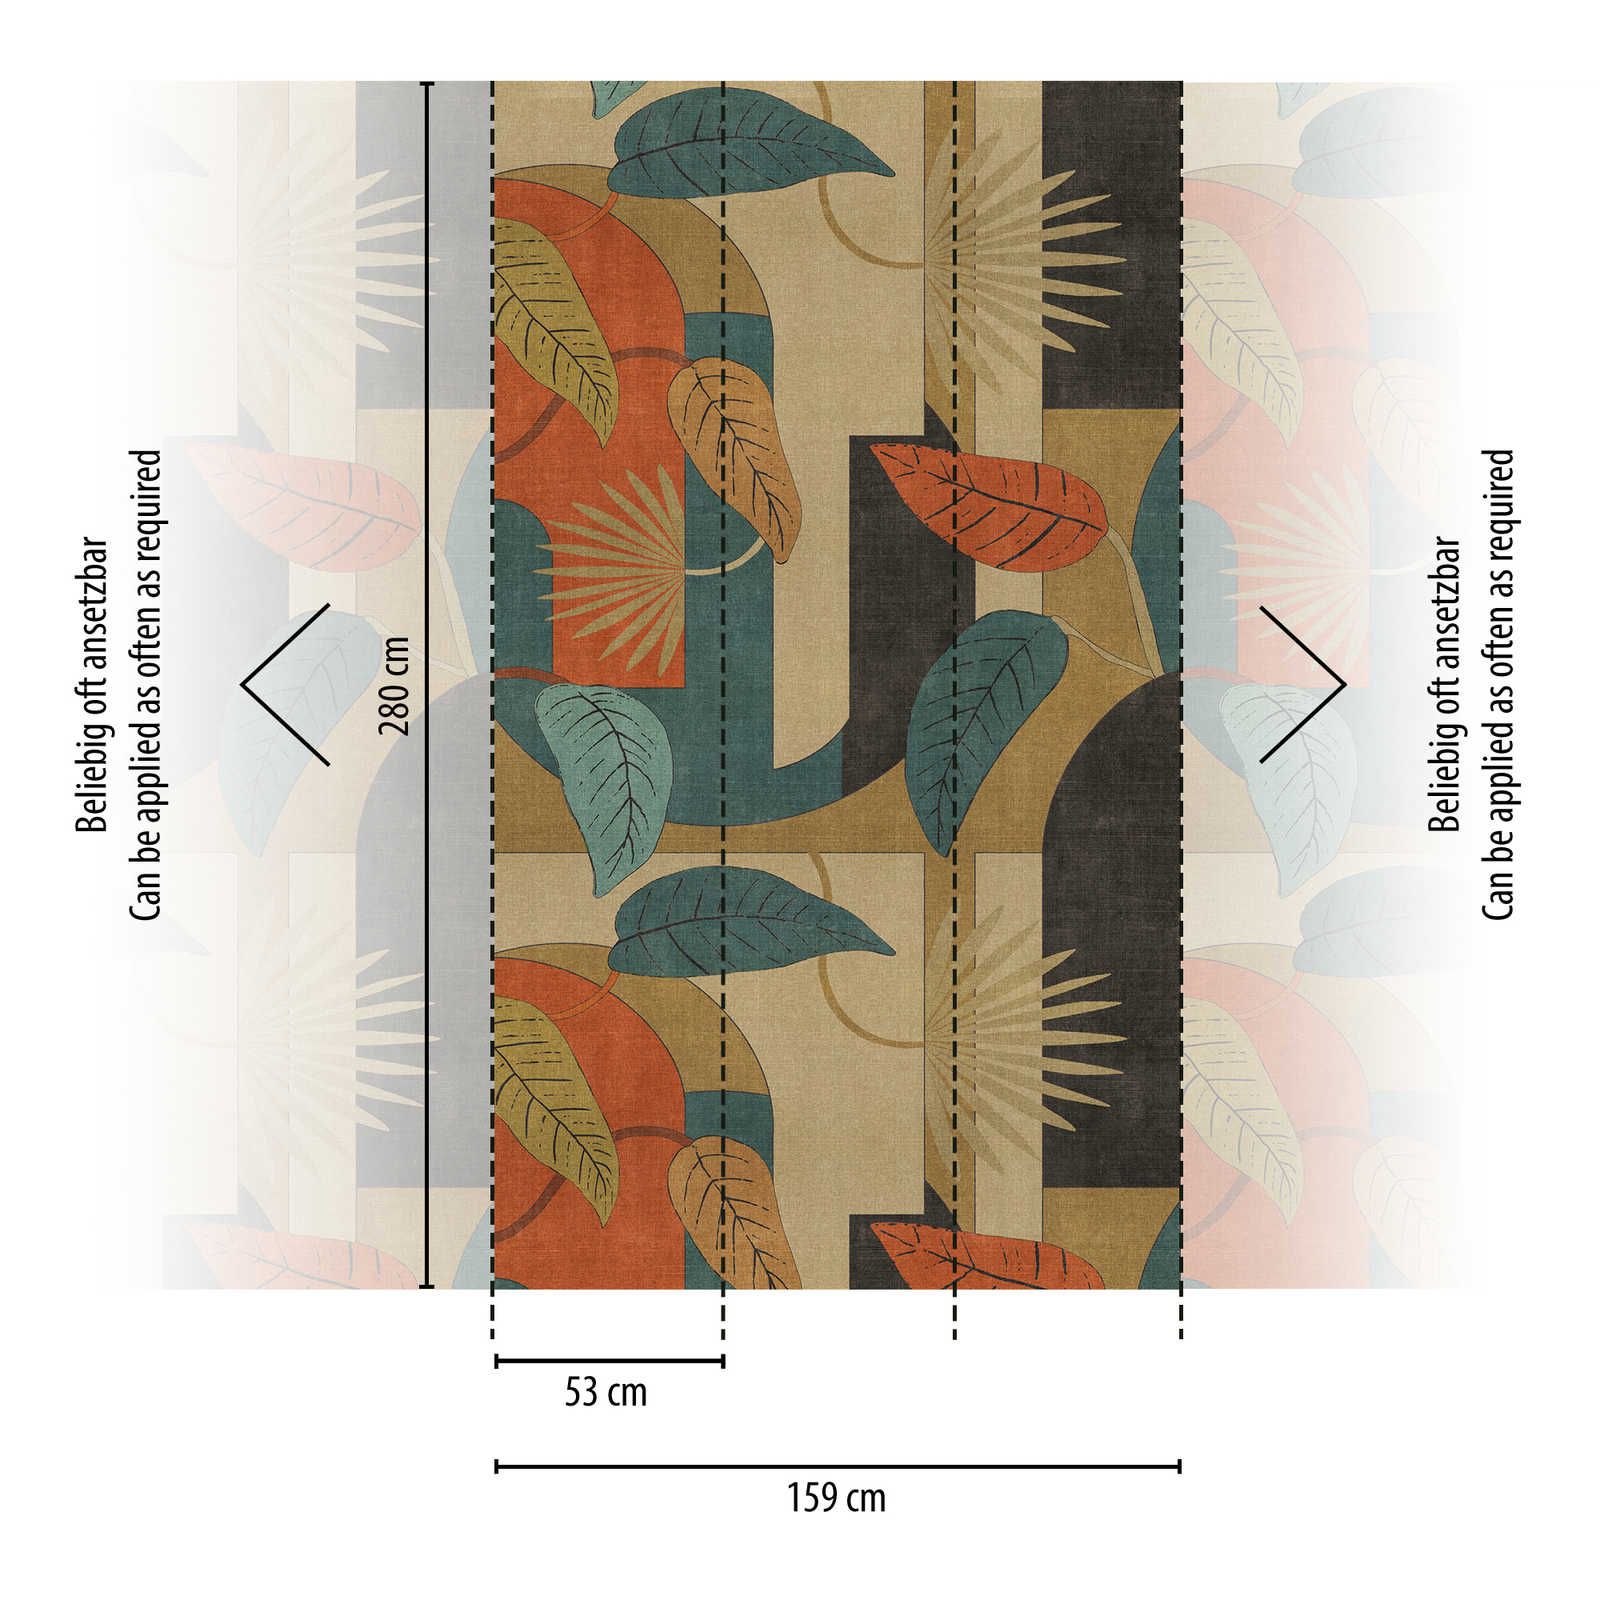             Papel pintado tejido-no tejido abstracto con hojas y motivos gráficos - beige, azul, rojo
        